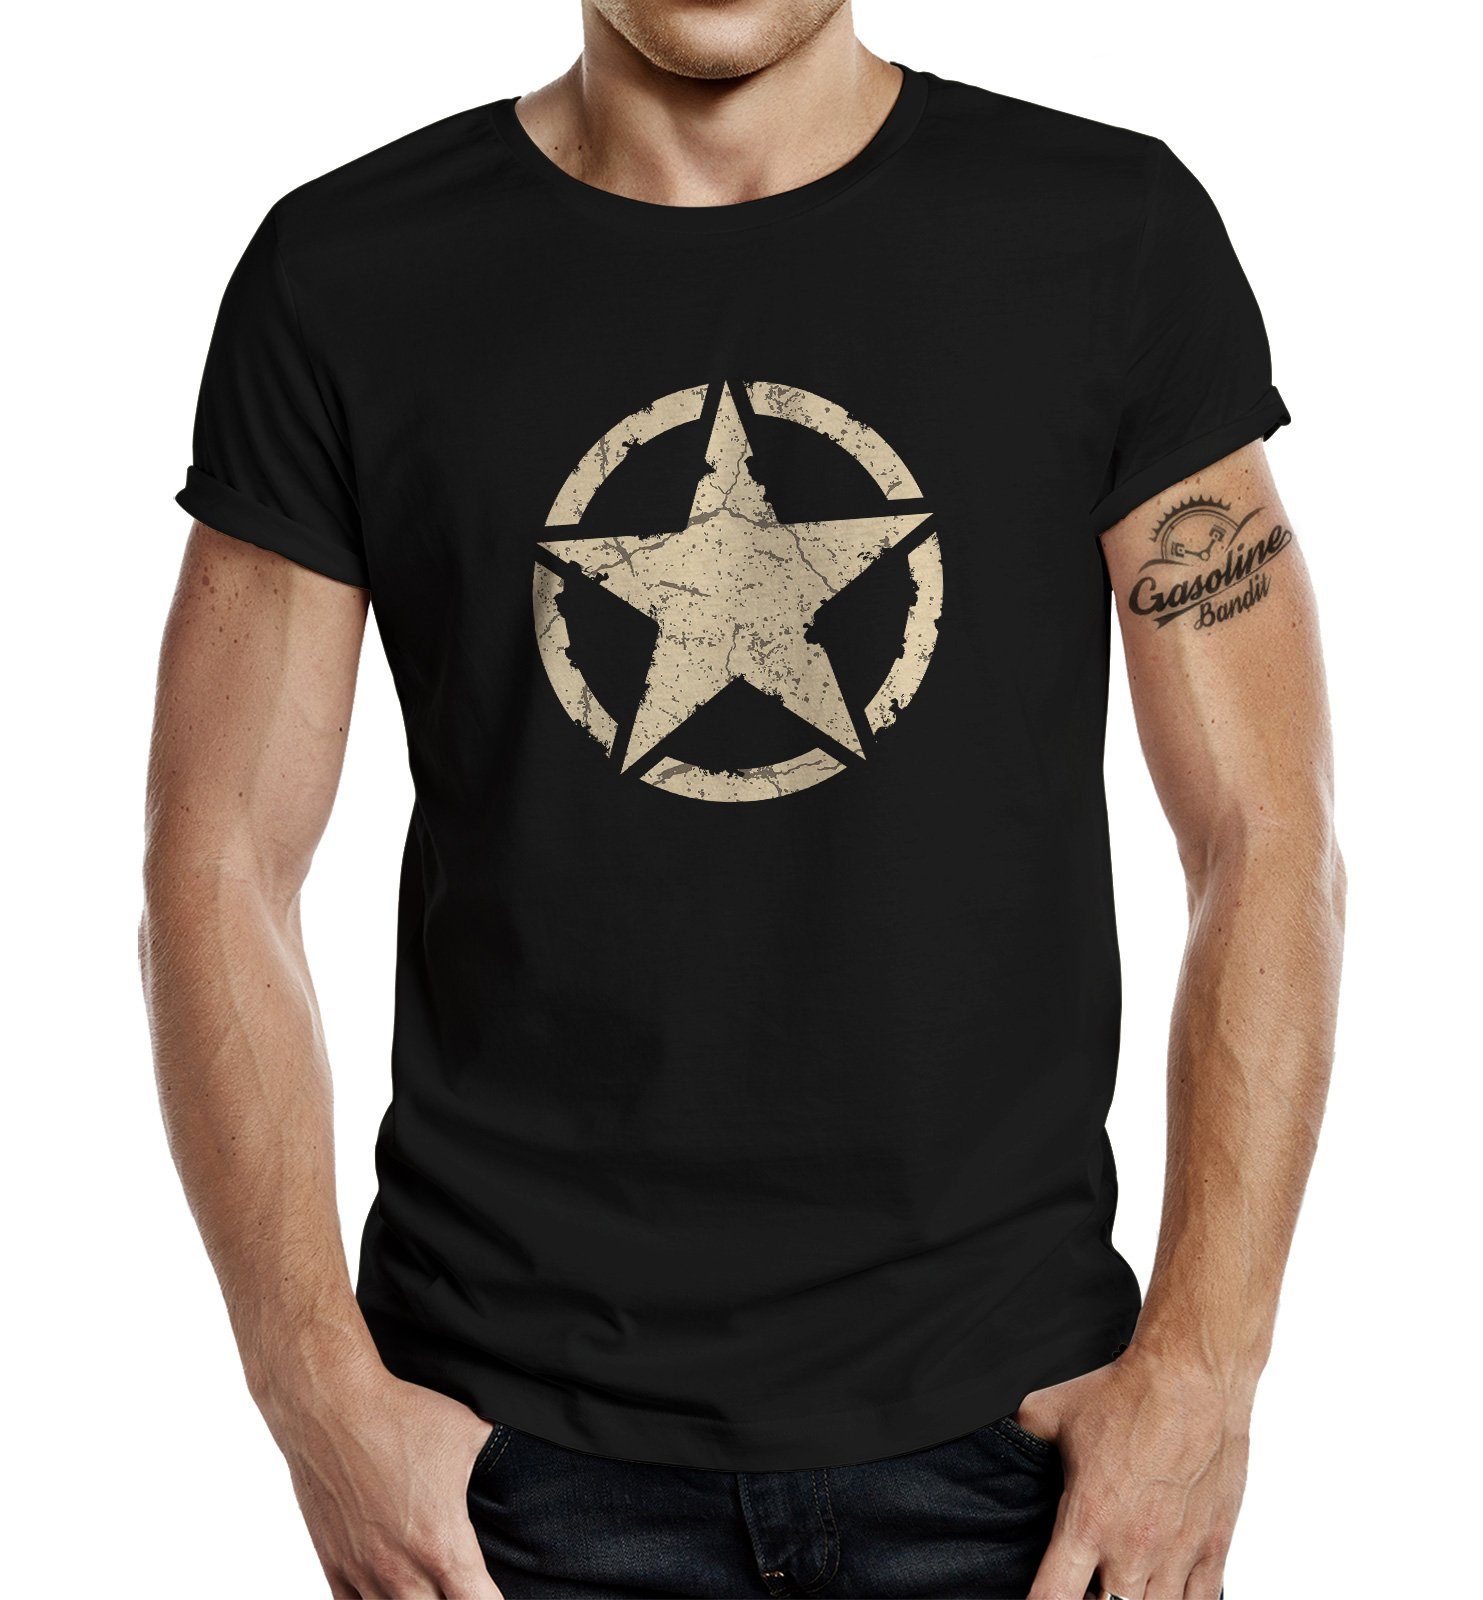 GASOLINE BANDIT® T-Shirt für den US-Army Fan: Vintage Star